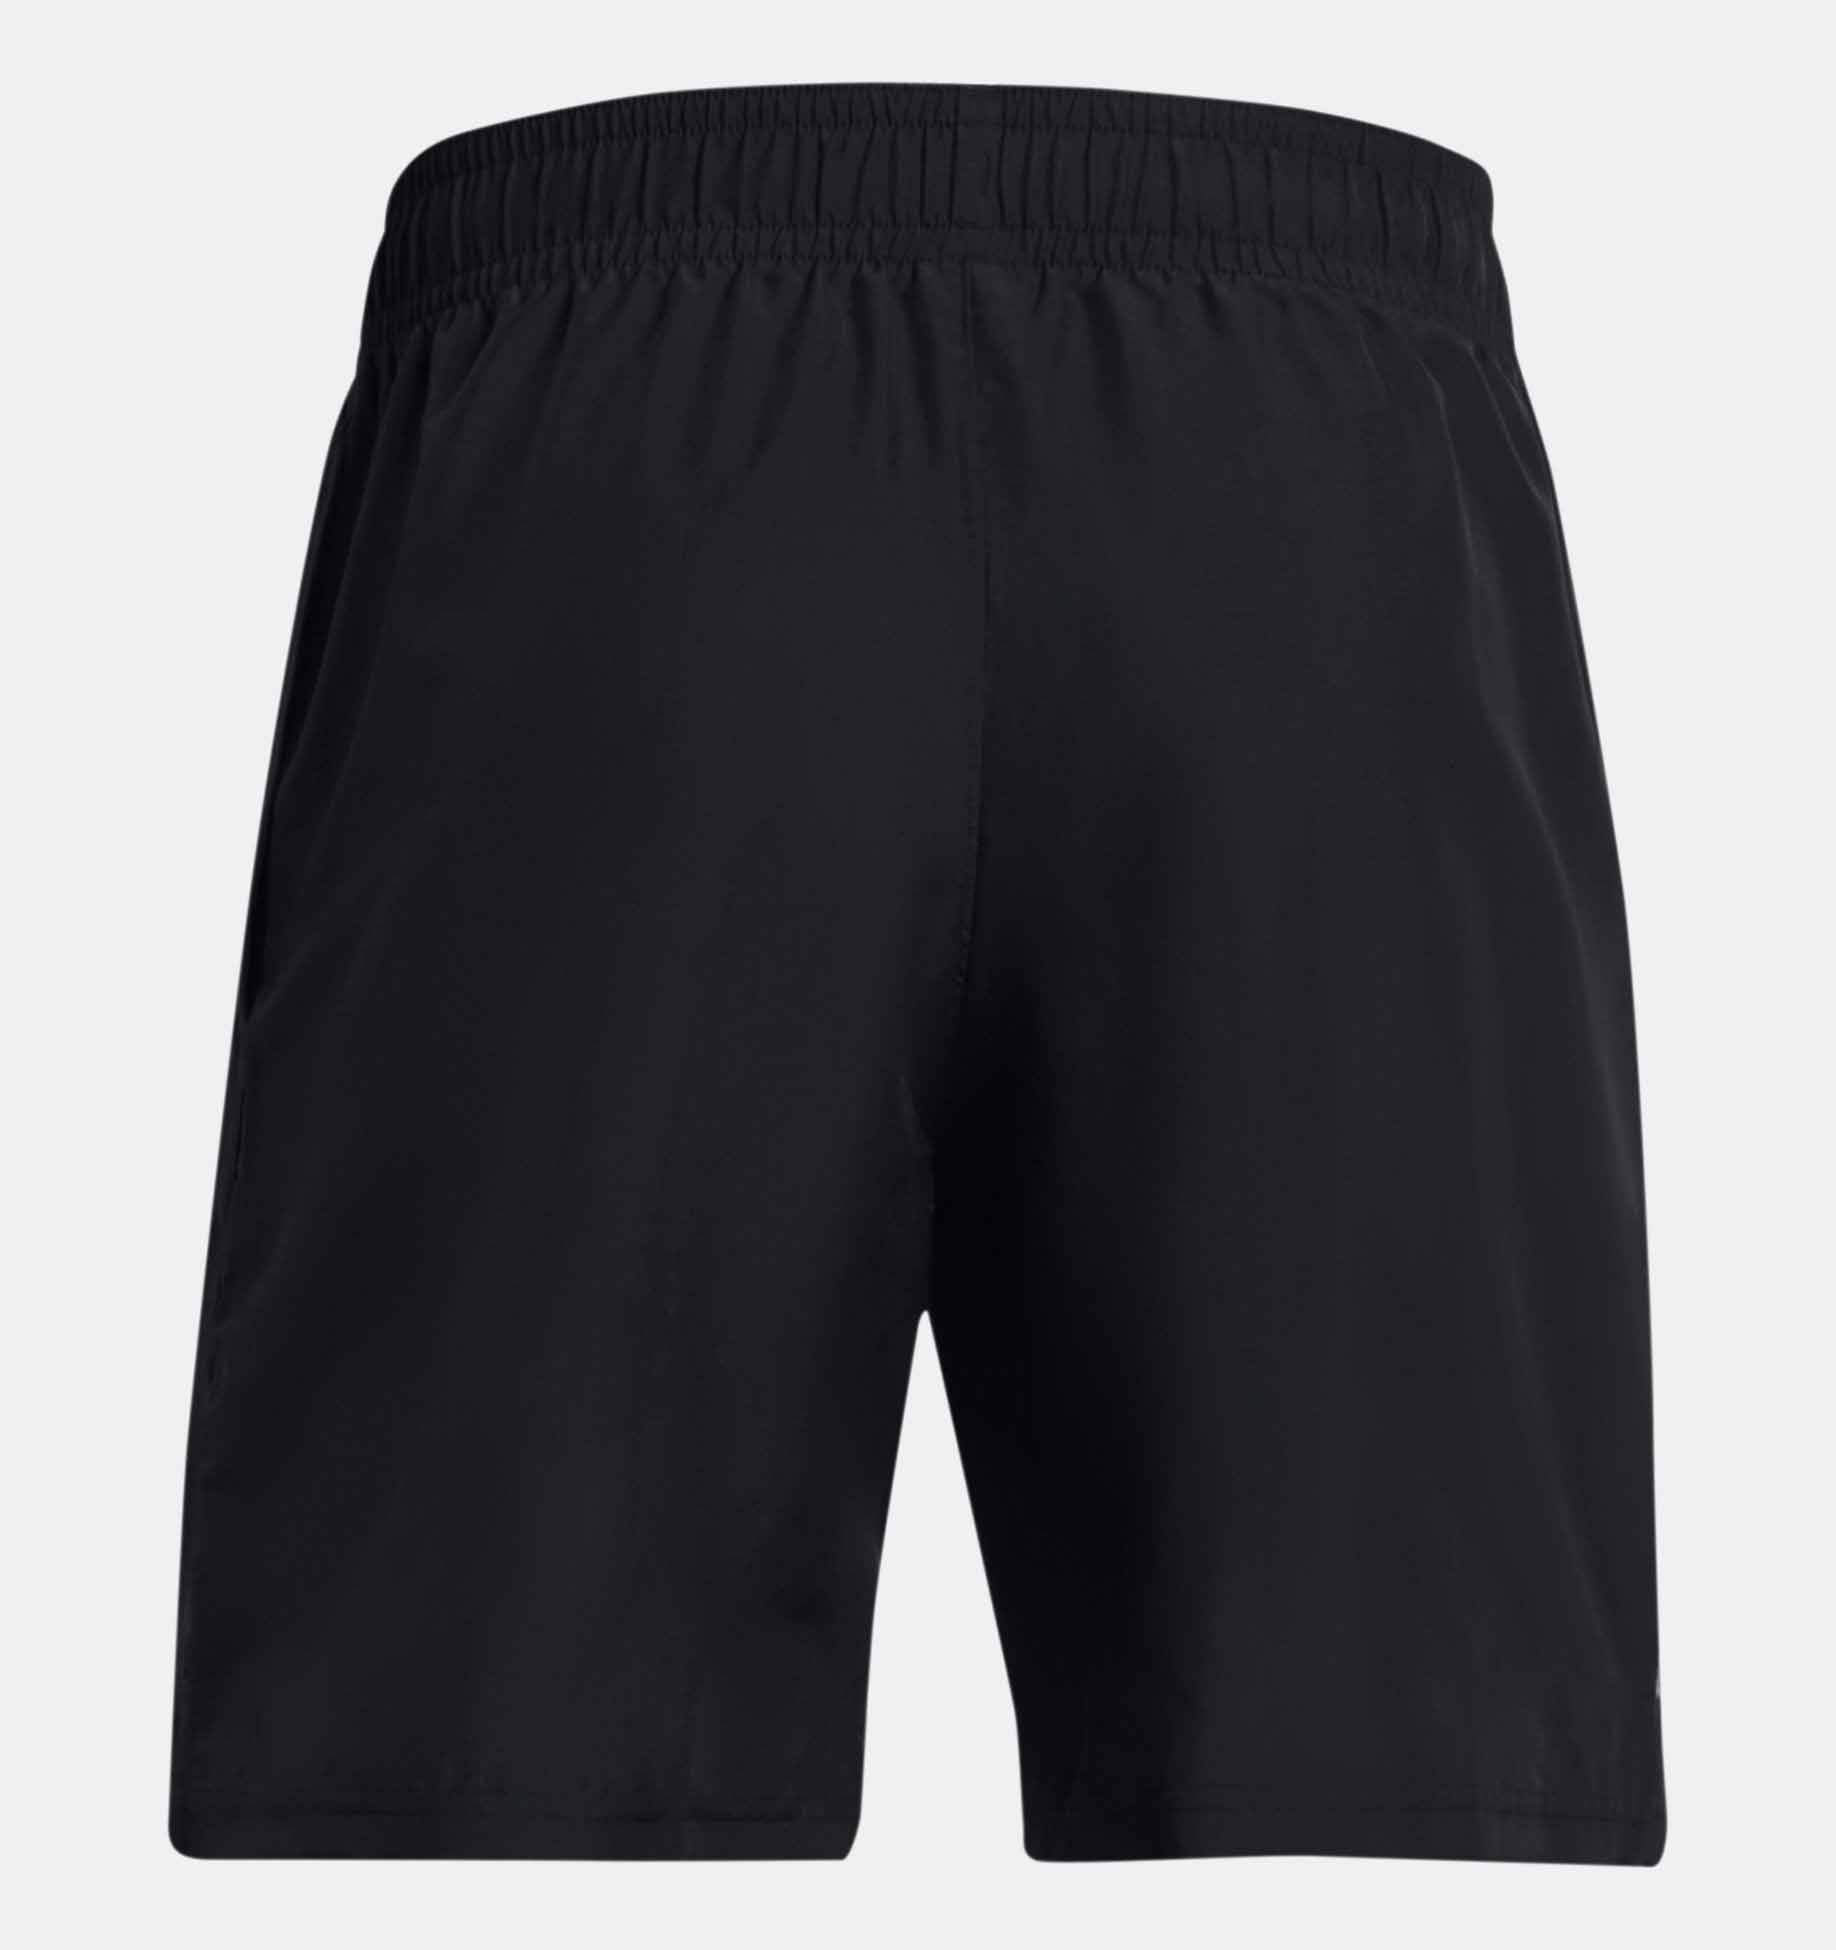 Pantalones cortos con marca tejida UA